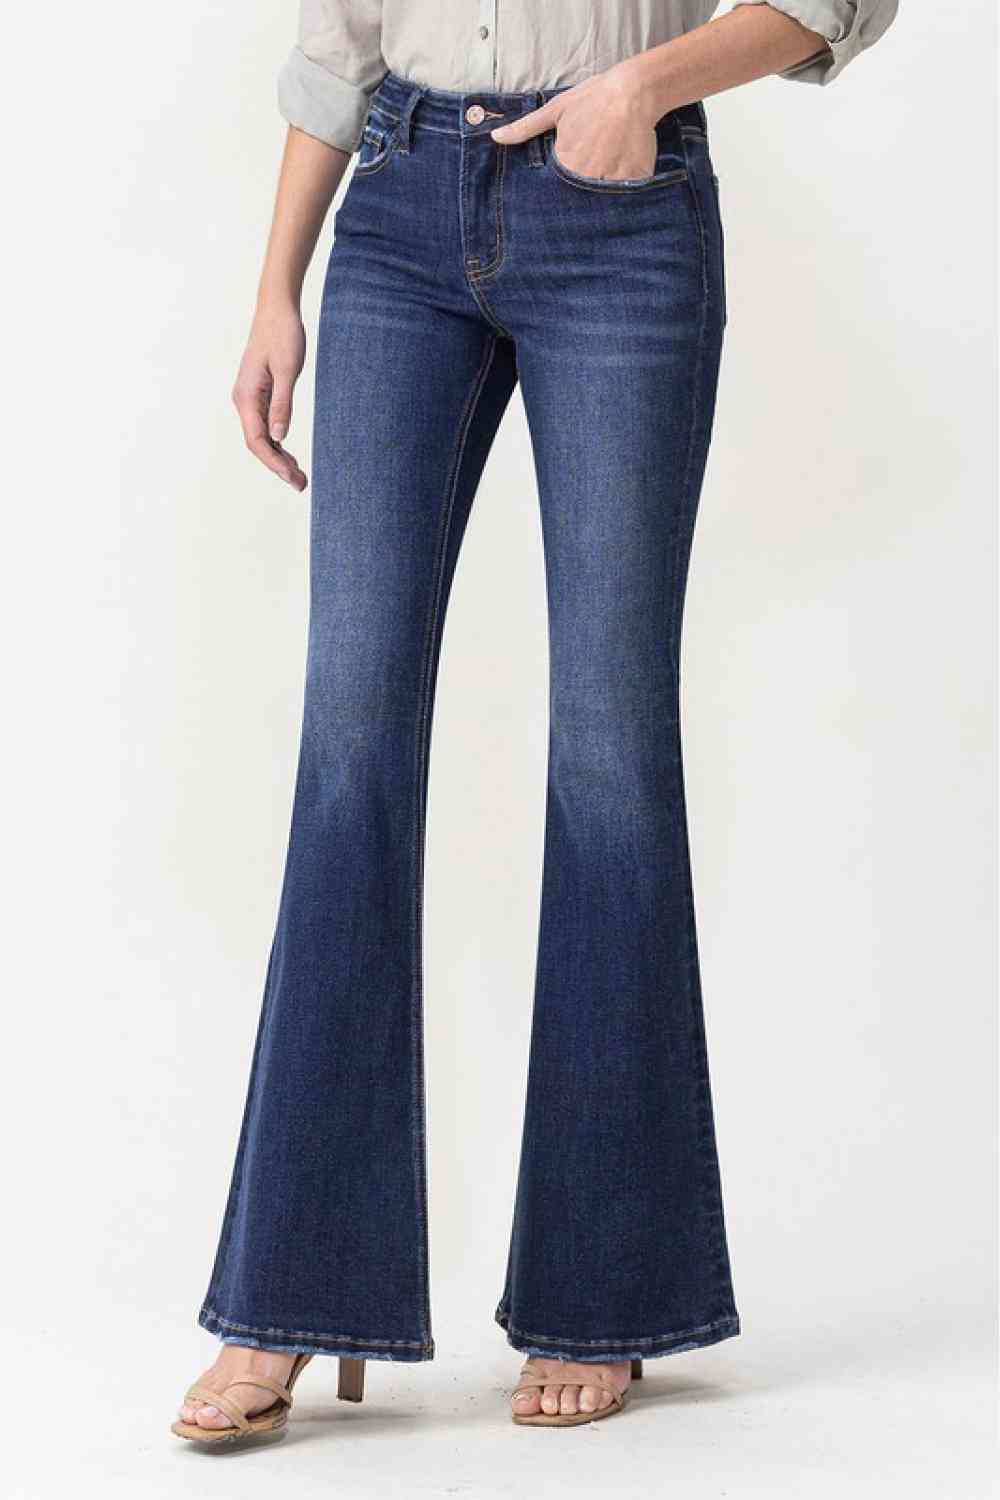 Jacqueline - Lovervet Midrise Flare Jeans